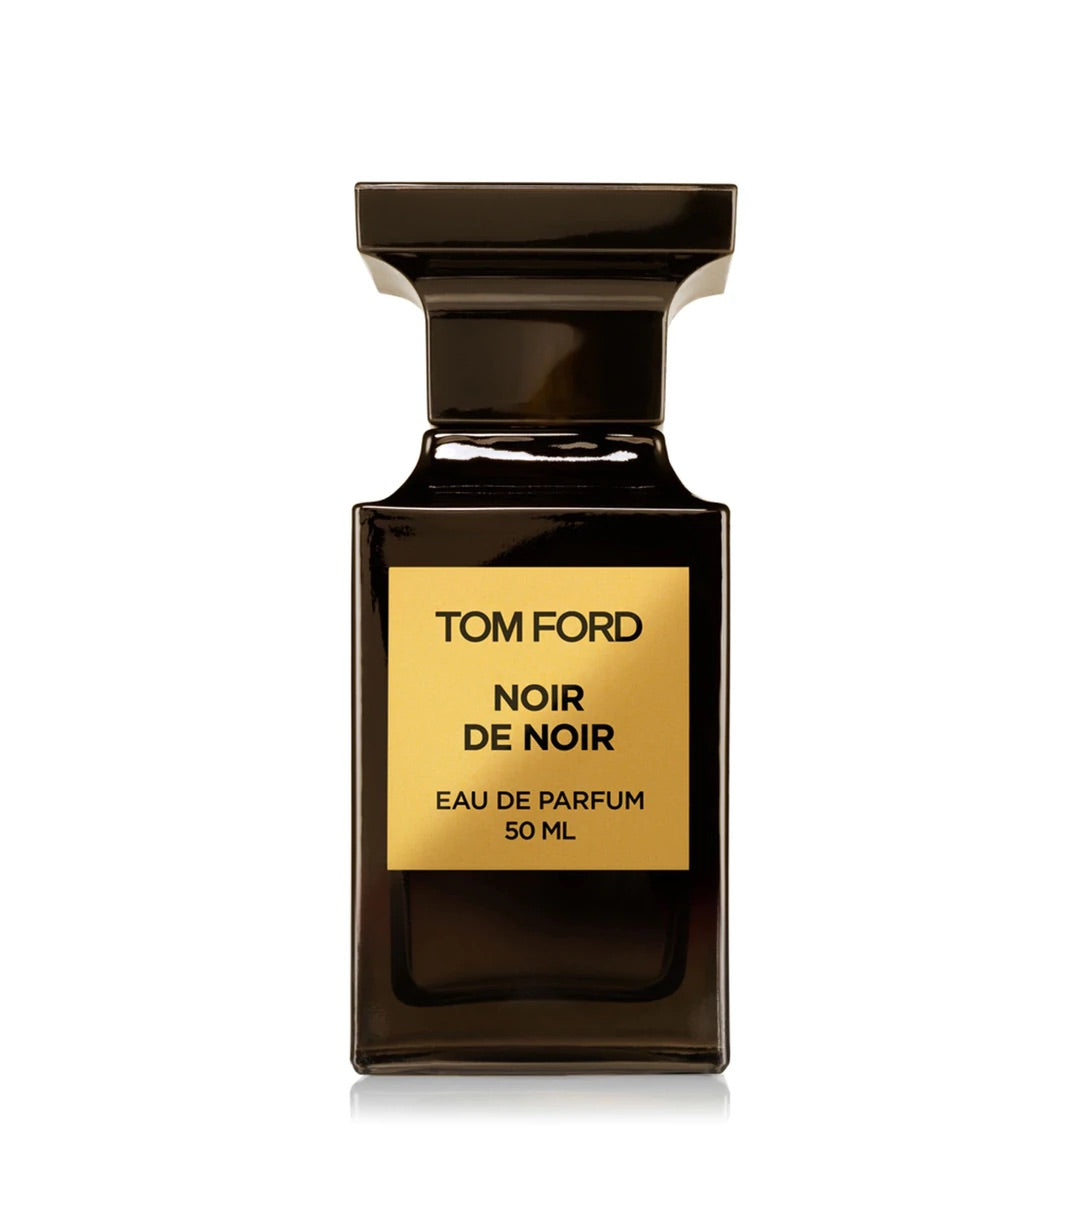 Tom Ford Noir De Noir Eau De Parfum Samples